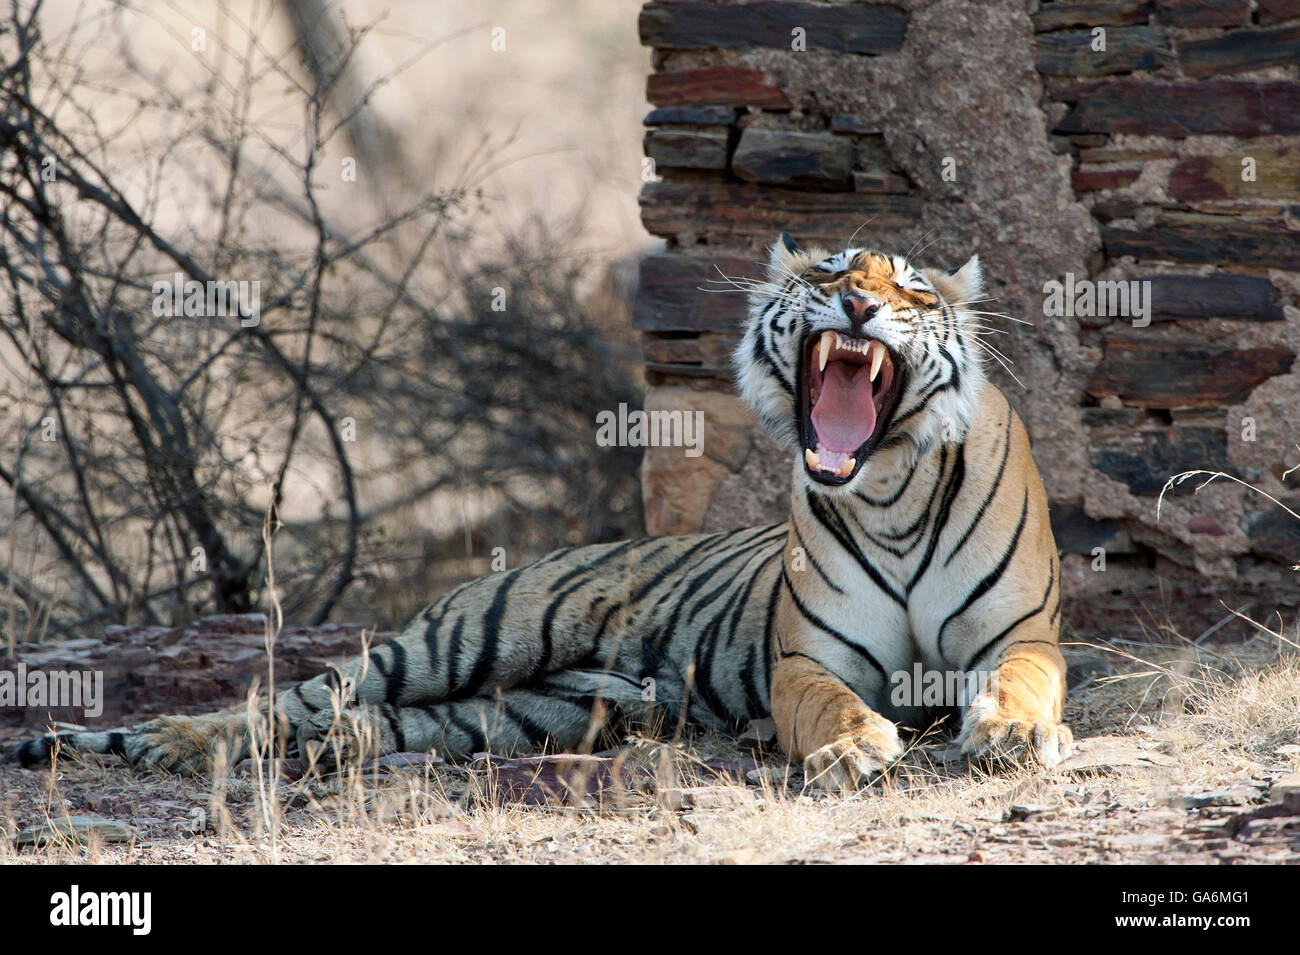 L'image de Tiger ( Panthera tigris ) T84, le sagittaire a été prise à Ranthambore, Inde Banque D'Images